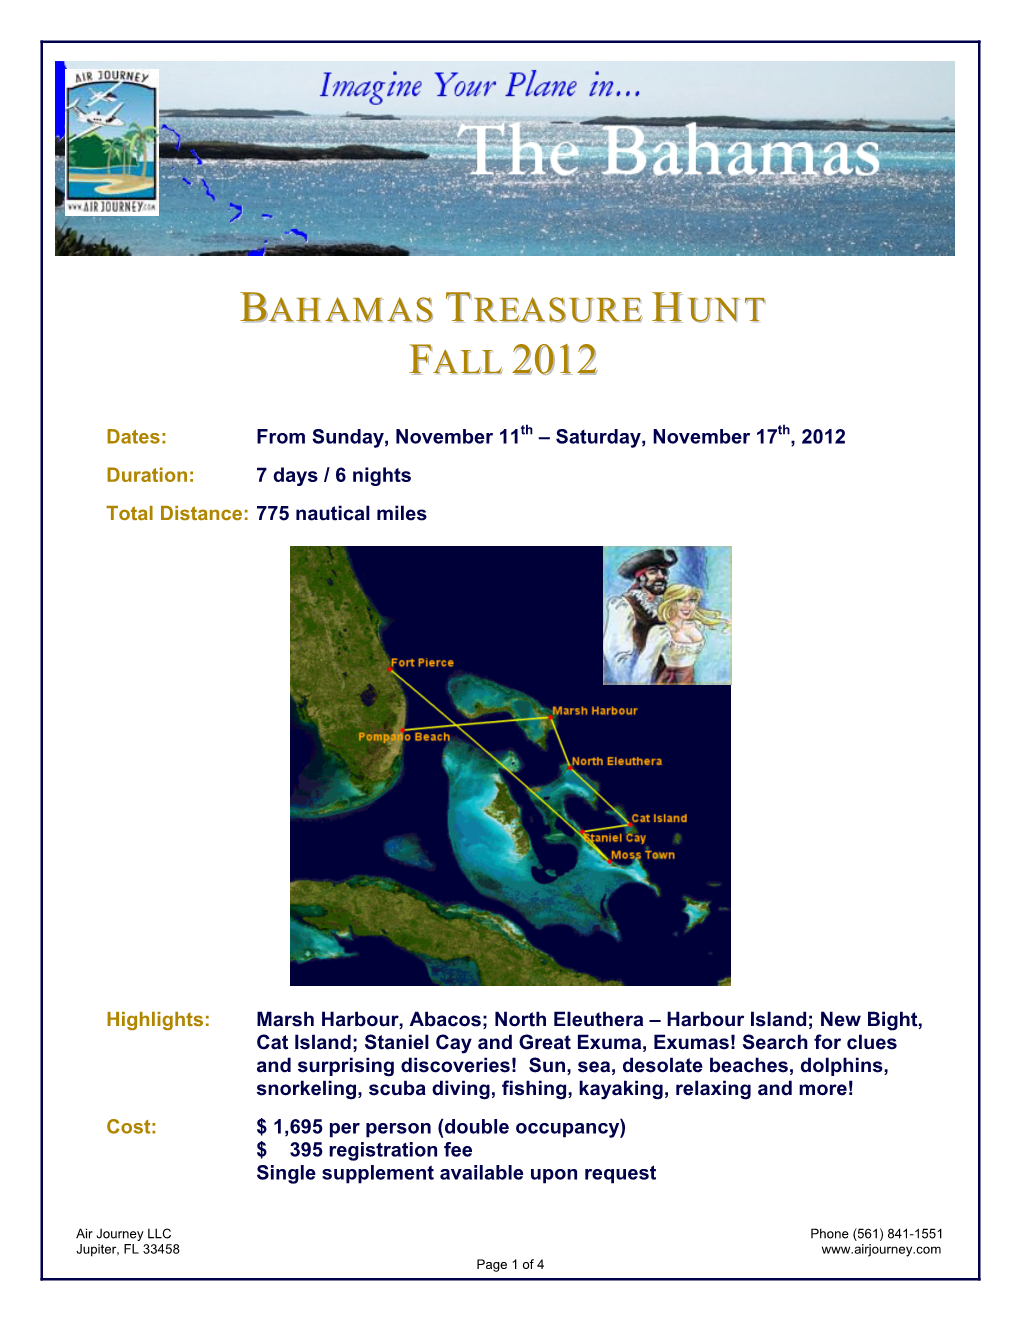 Bahamas Treasure Hunt Fall